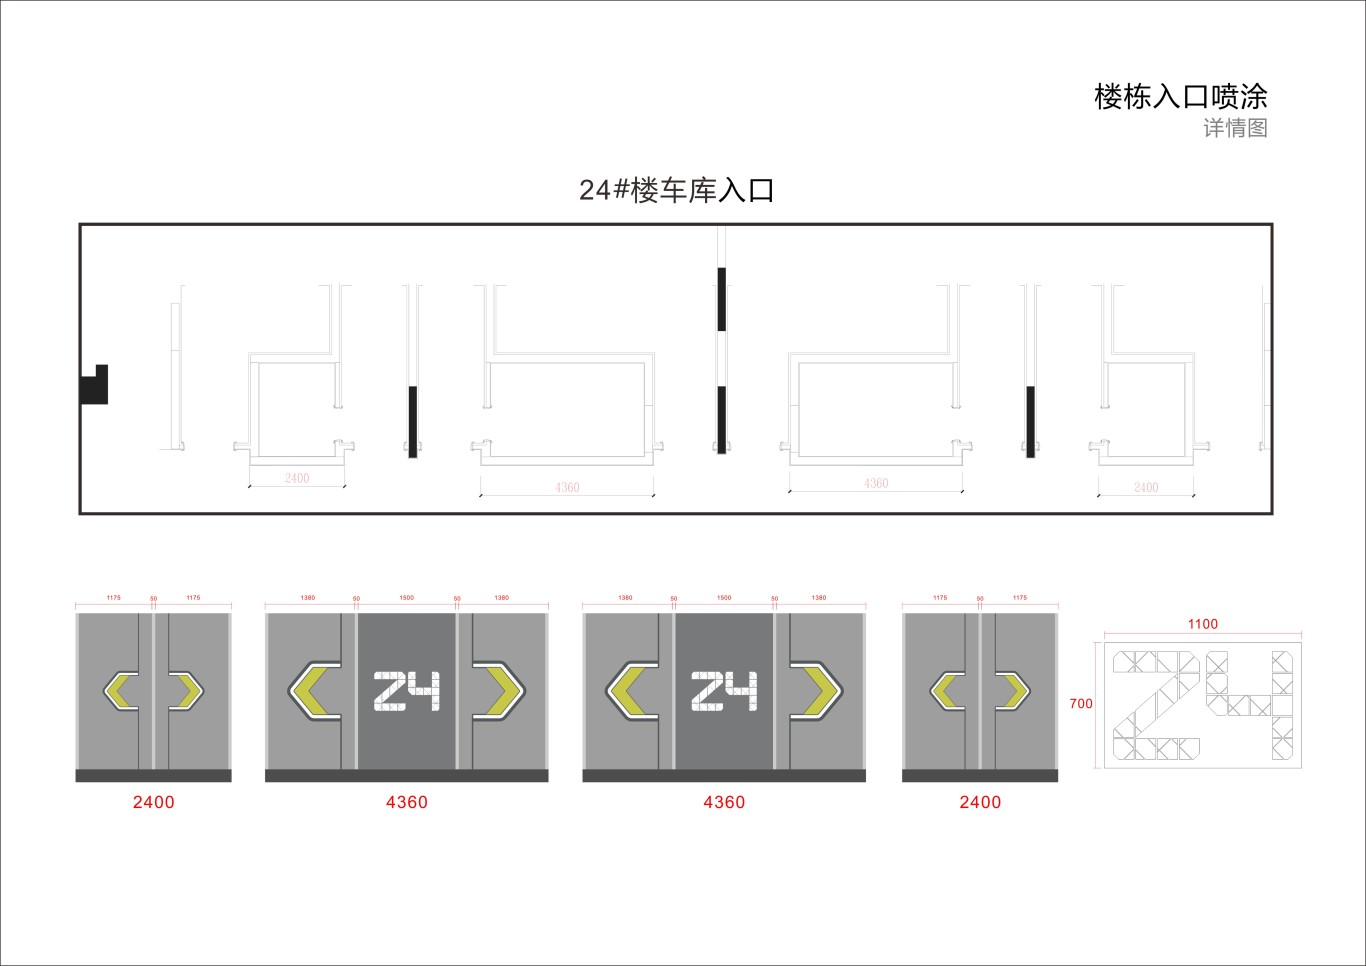 金茂地产 杭州项目地库美化设计图33